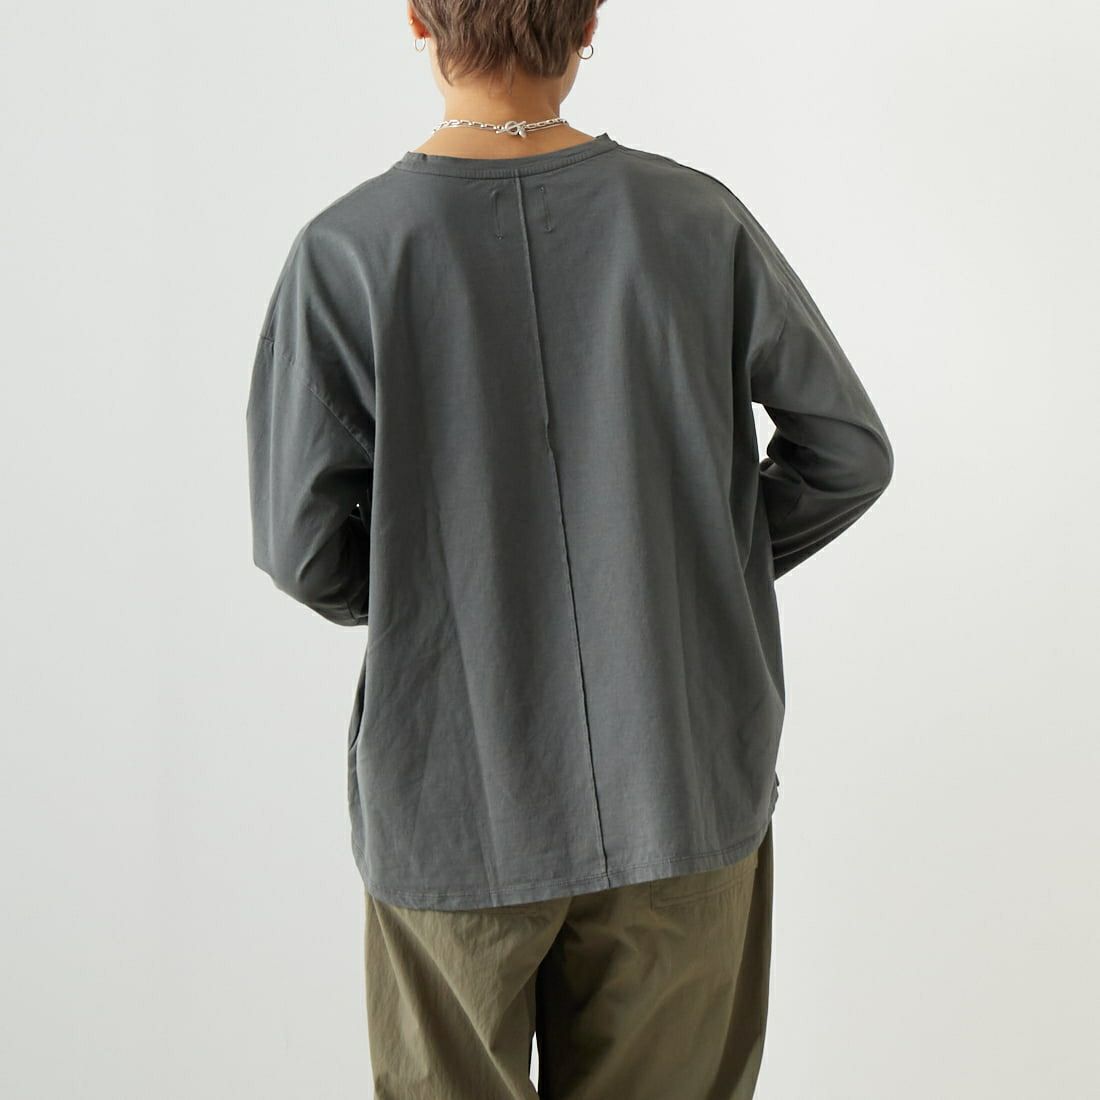 MICA&DEAL [マイカアンドディール] CHAMPLAN ロゴプリントTシャツ [0123309172] GRAY &&モデル身長：160cm 着用サイズ：F&&